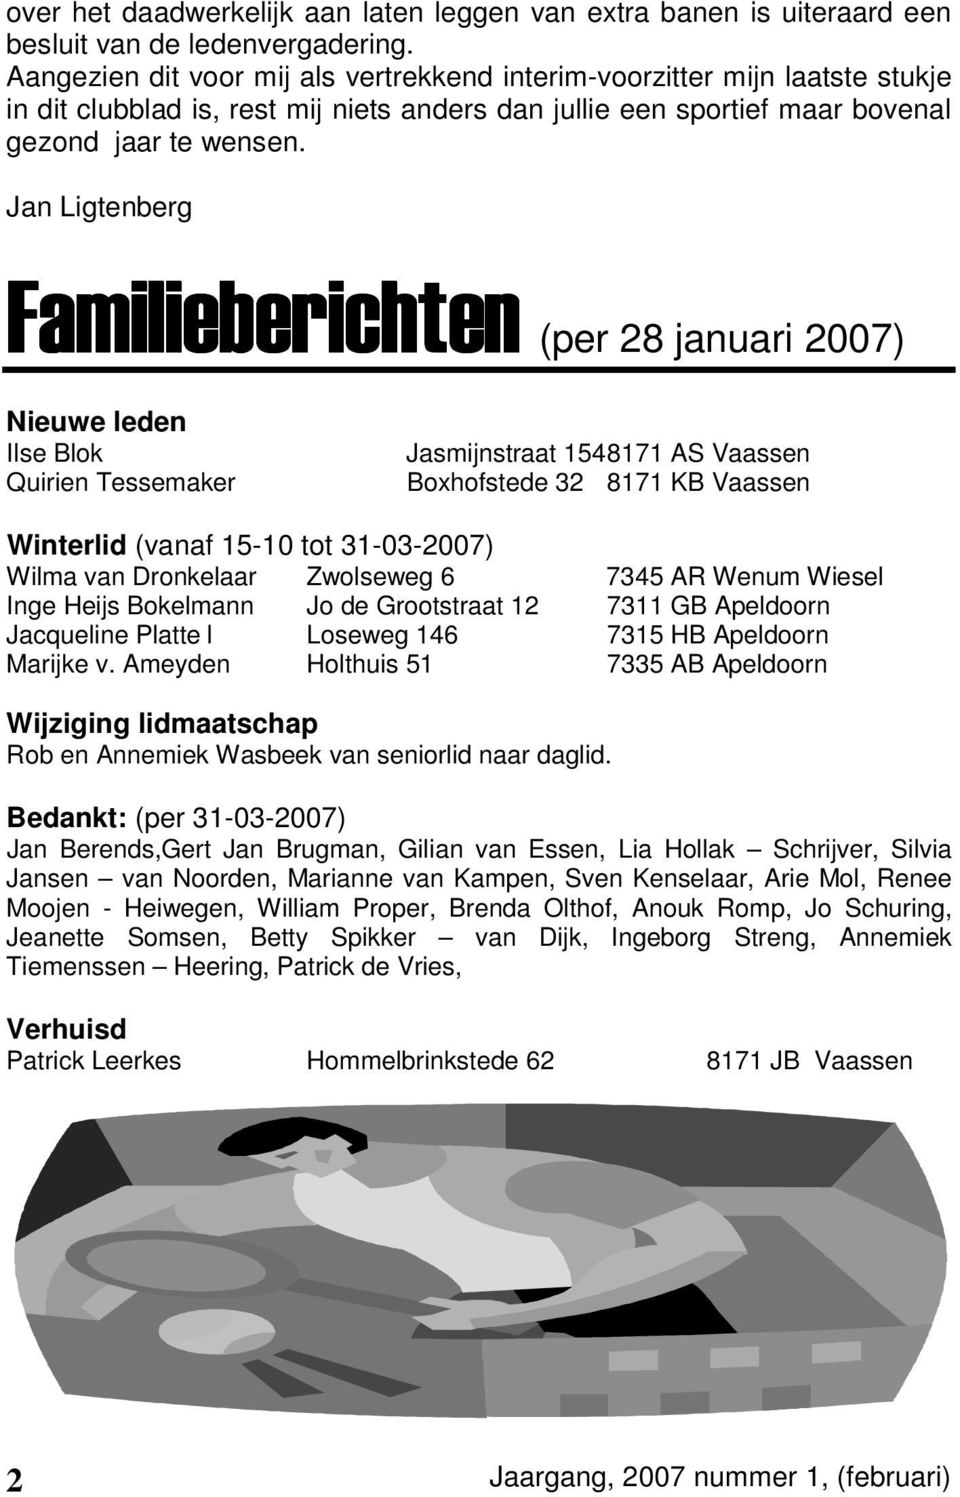 Jan Ligtenberg Familieberichte Familieberichten (per 28 januari 2007) Nieuwe leden Ilse Blok Quirien Tessemaker Jasmijnstraat 1548171 AS Vaassen Boxhofstede 32 8171 KB Vaassen Winterlid (vanaf 15-10